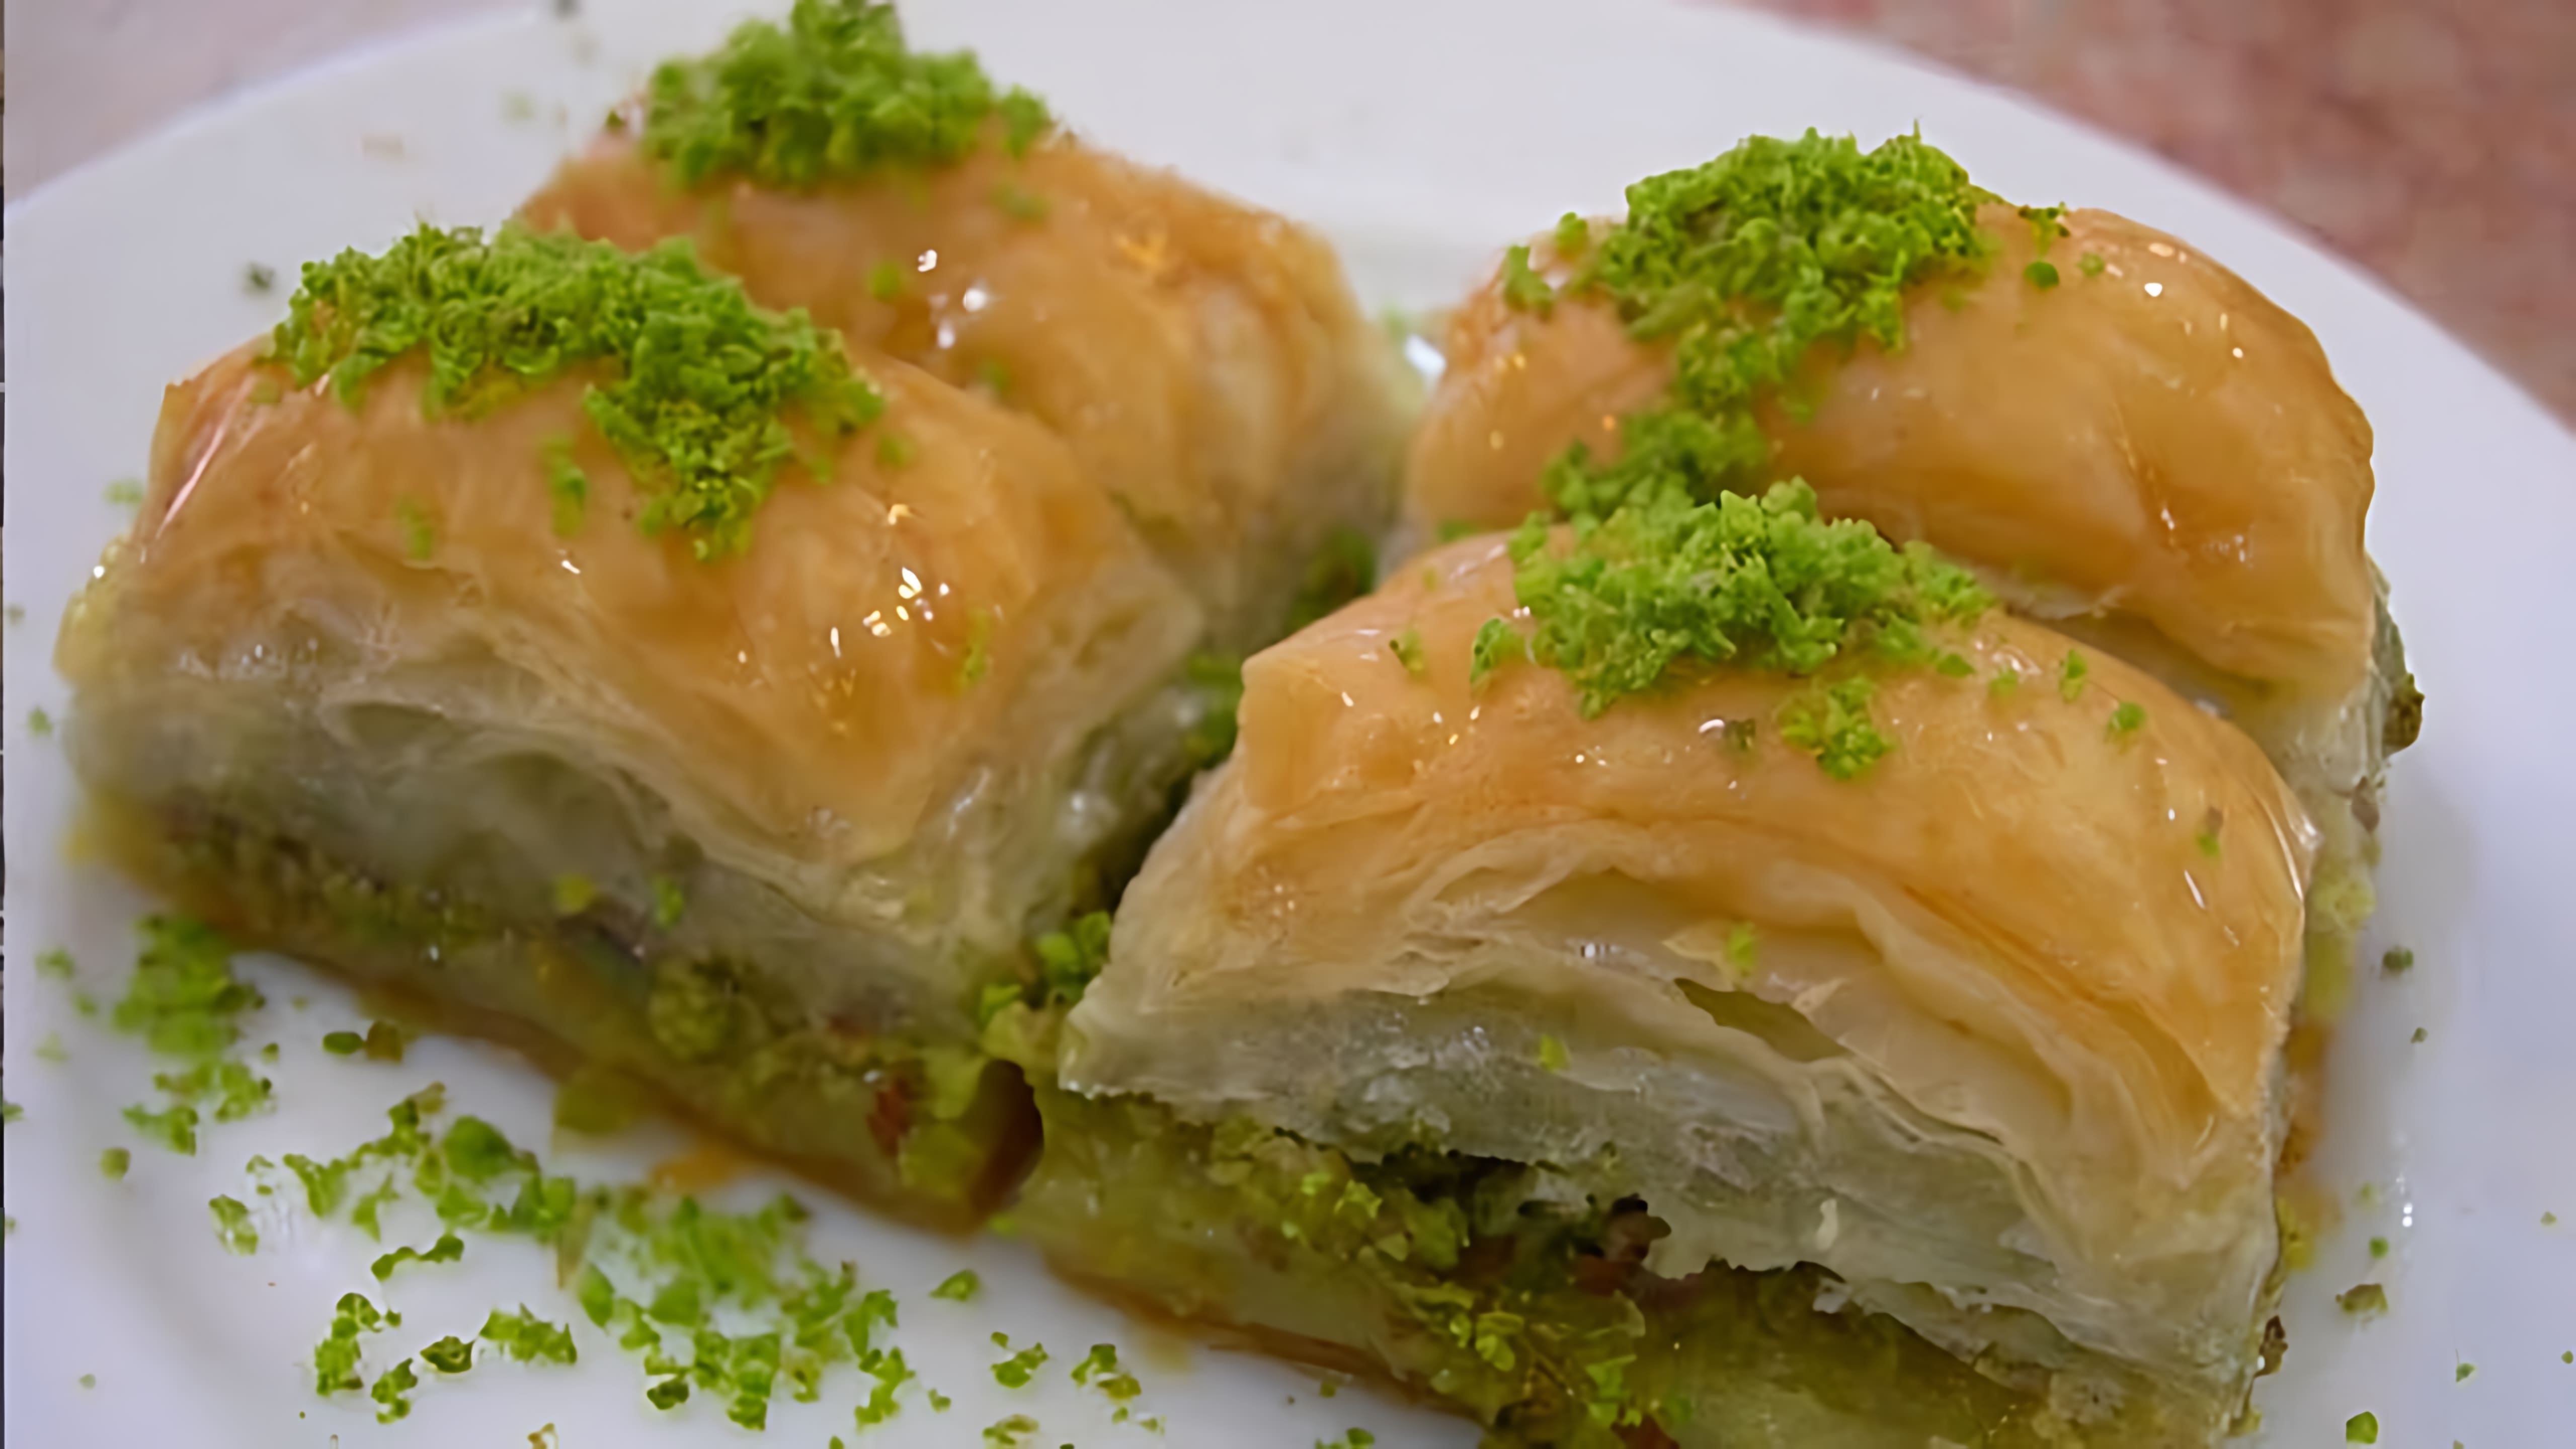 В этом видео мы видим, как готовят пахлаву - один из самых известных десертов турецкой кухни